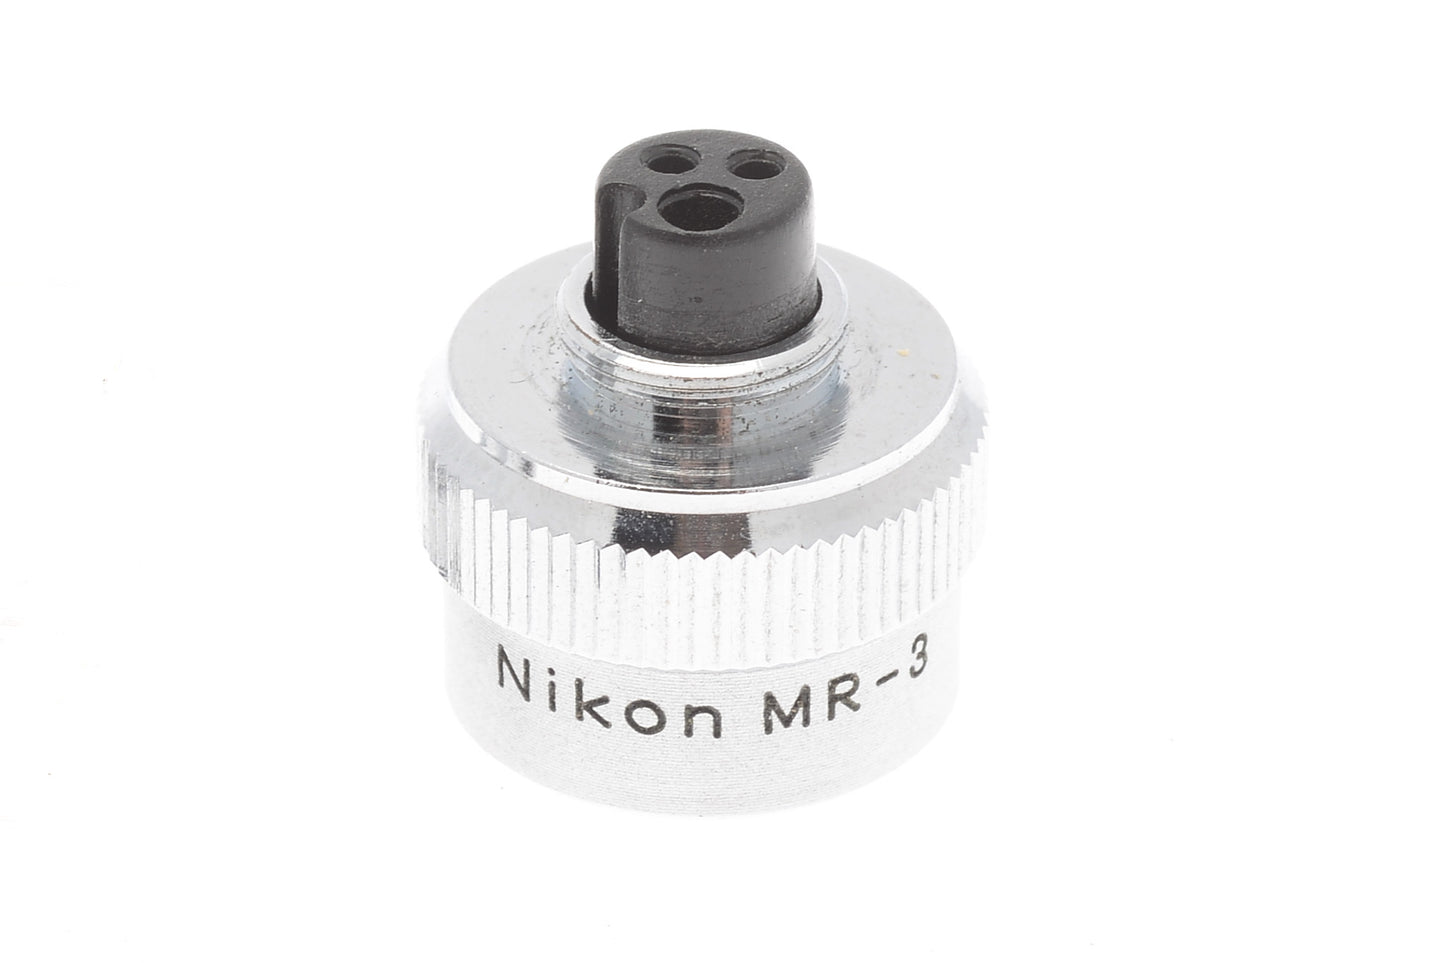 Nikon MR-3 Shutter Release Button - Accessory